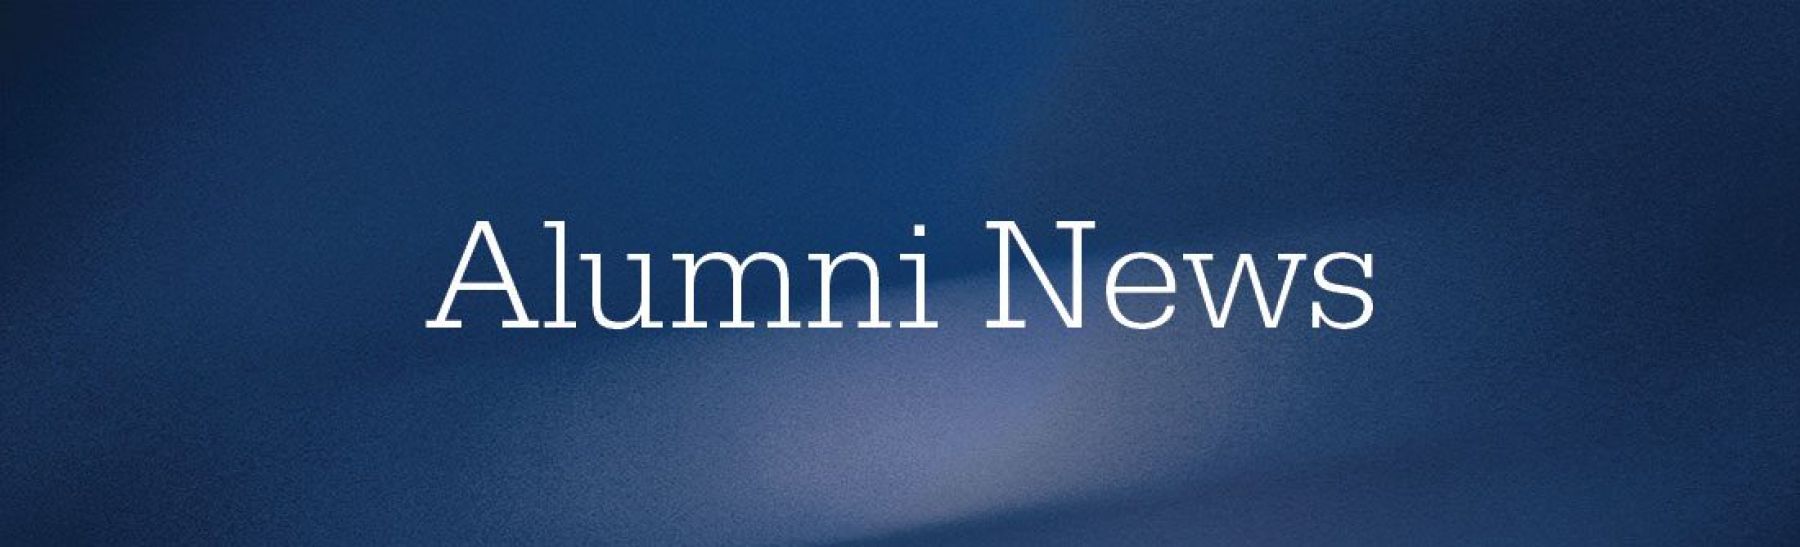 Alumni News standing graphic